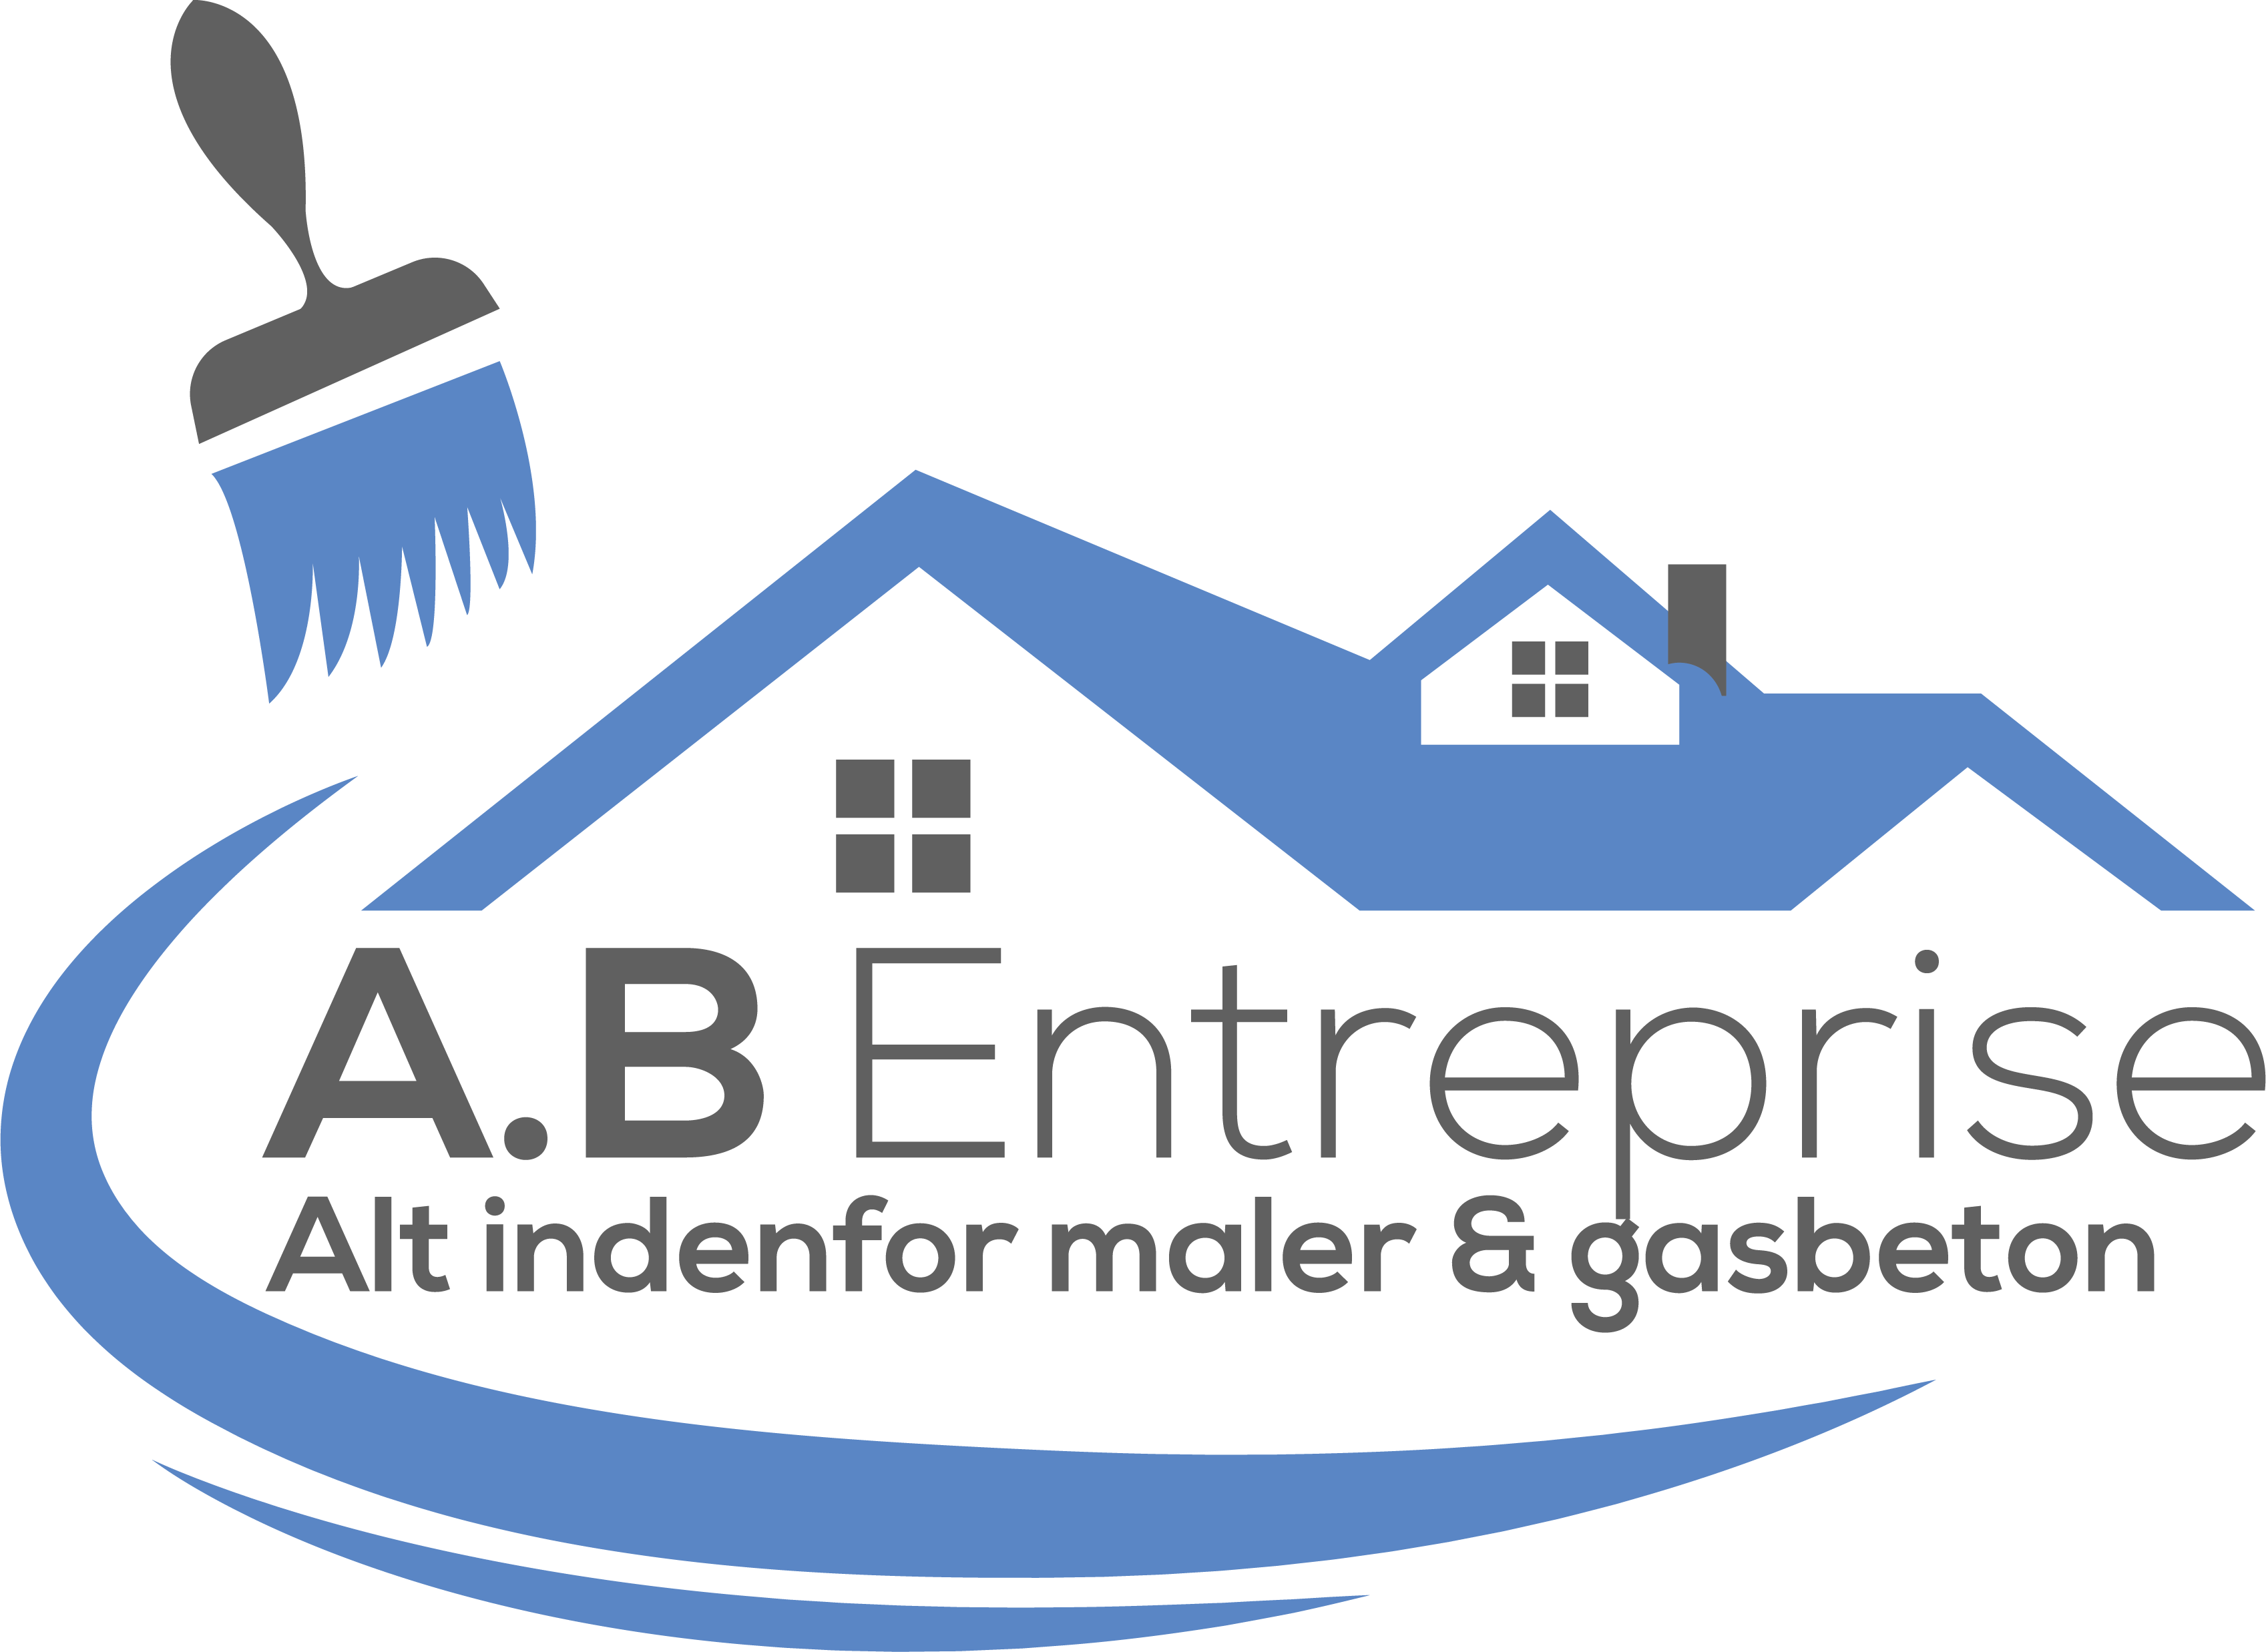 A.B Enterprise